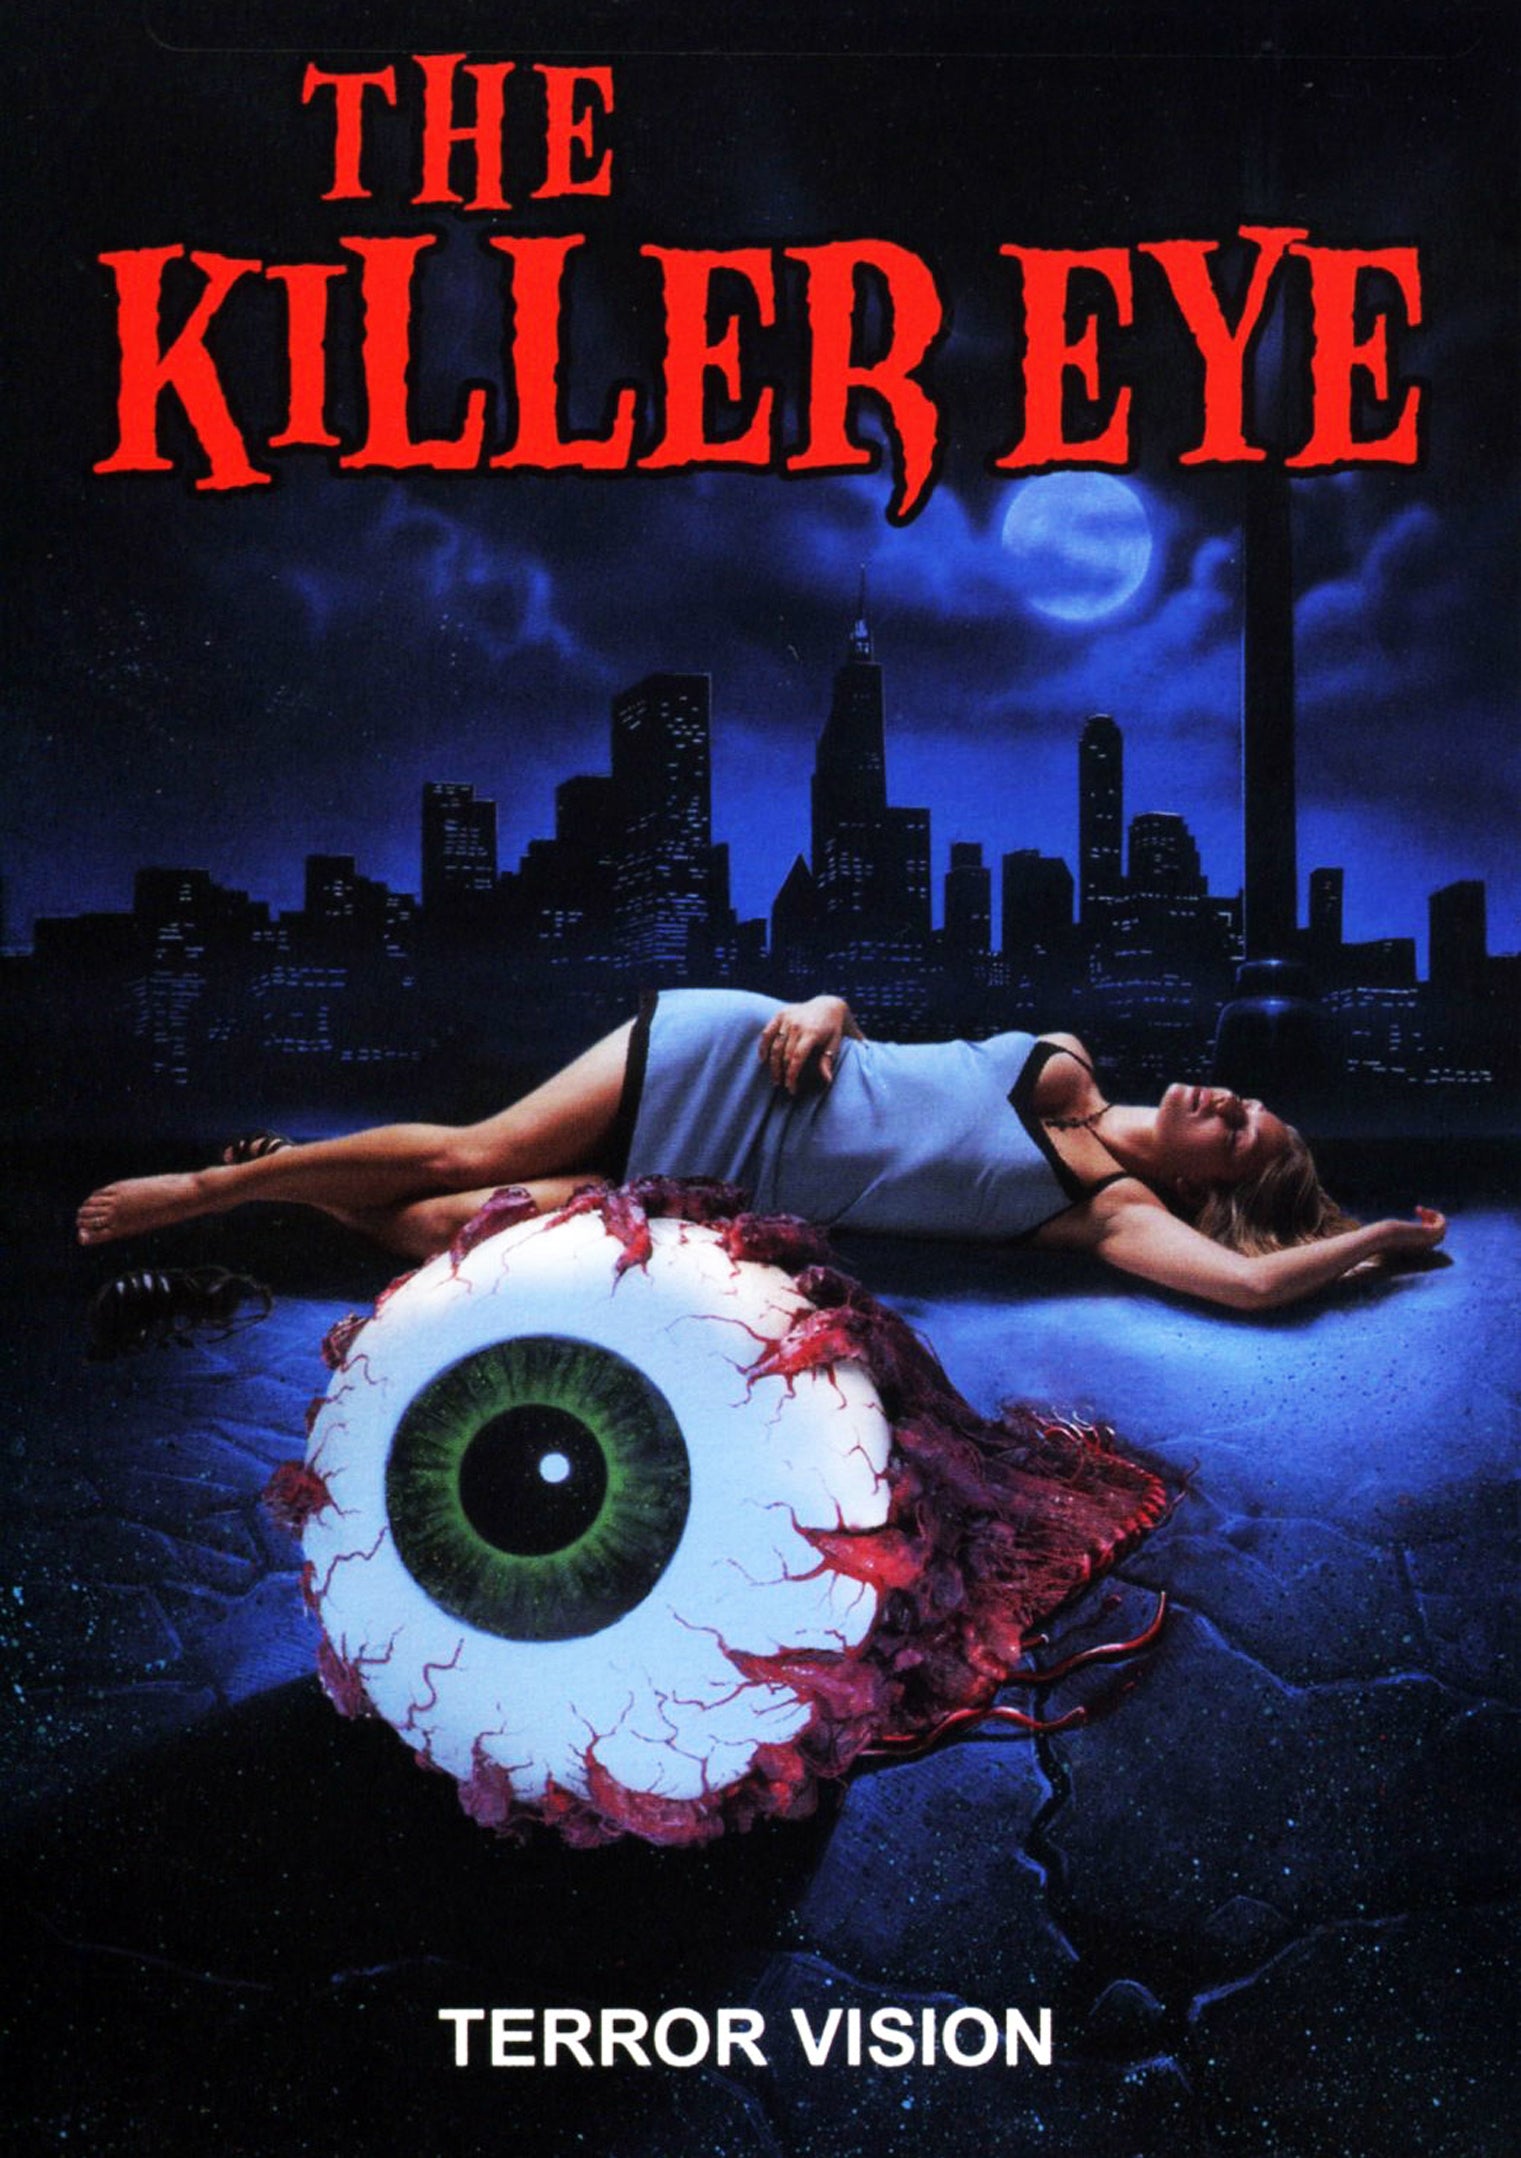 THE KILLER EYE DVD